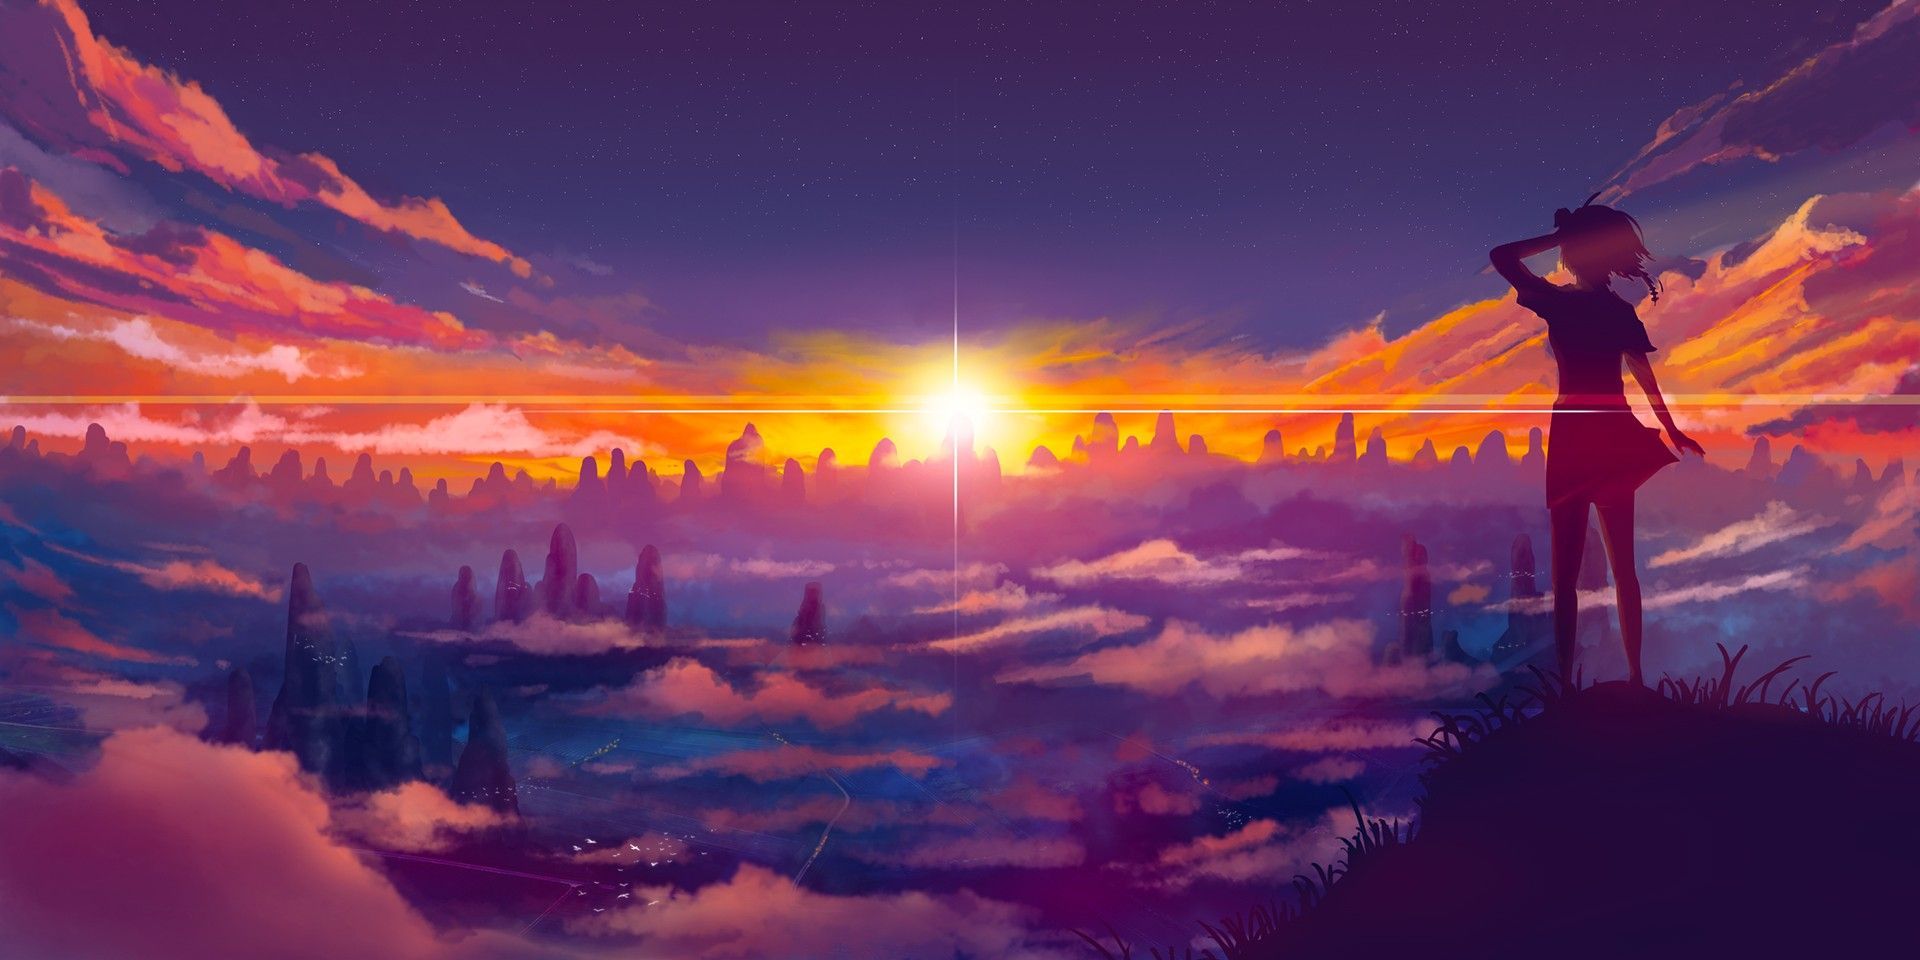 Animated Kingdom Mountains Sunrise. Anime scenery, Scenery wallpaper, Anime scenery wallpaper